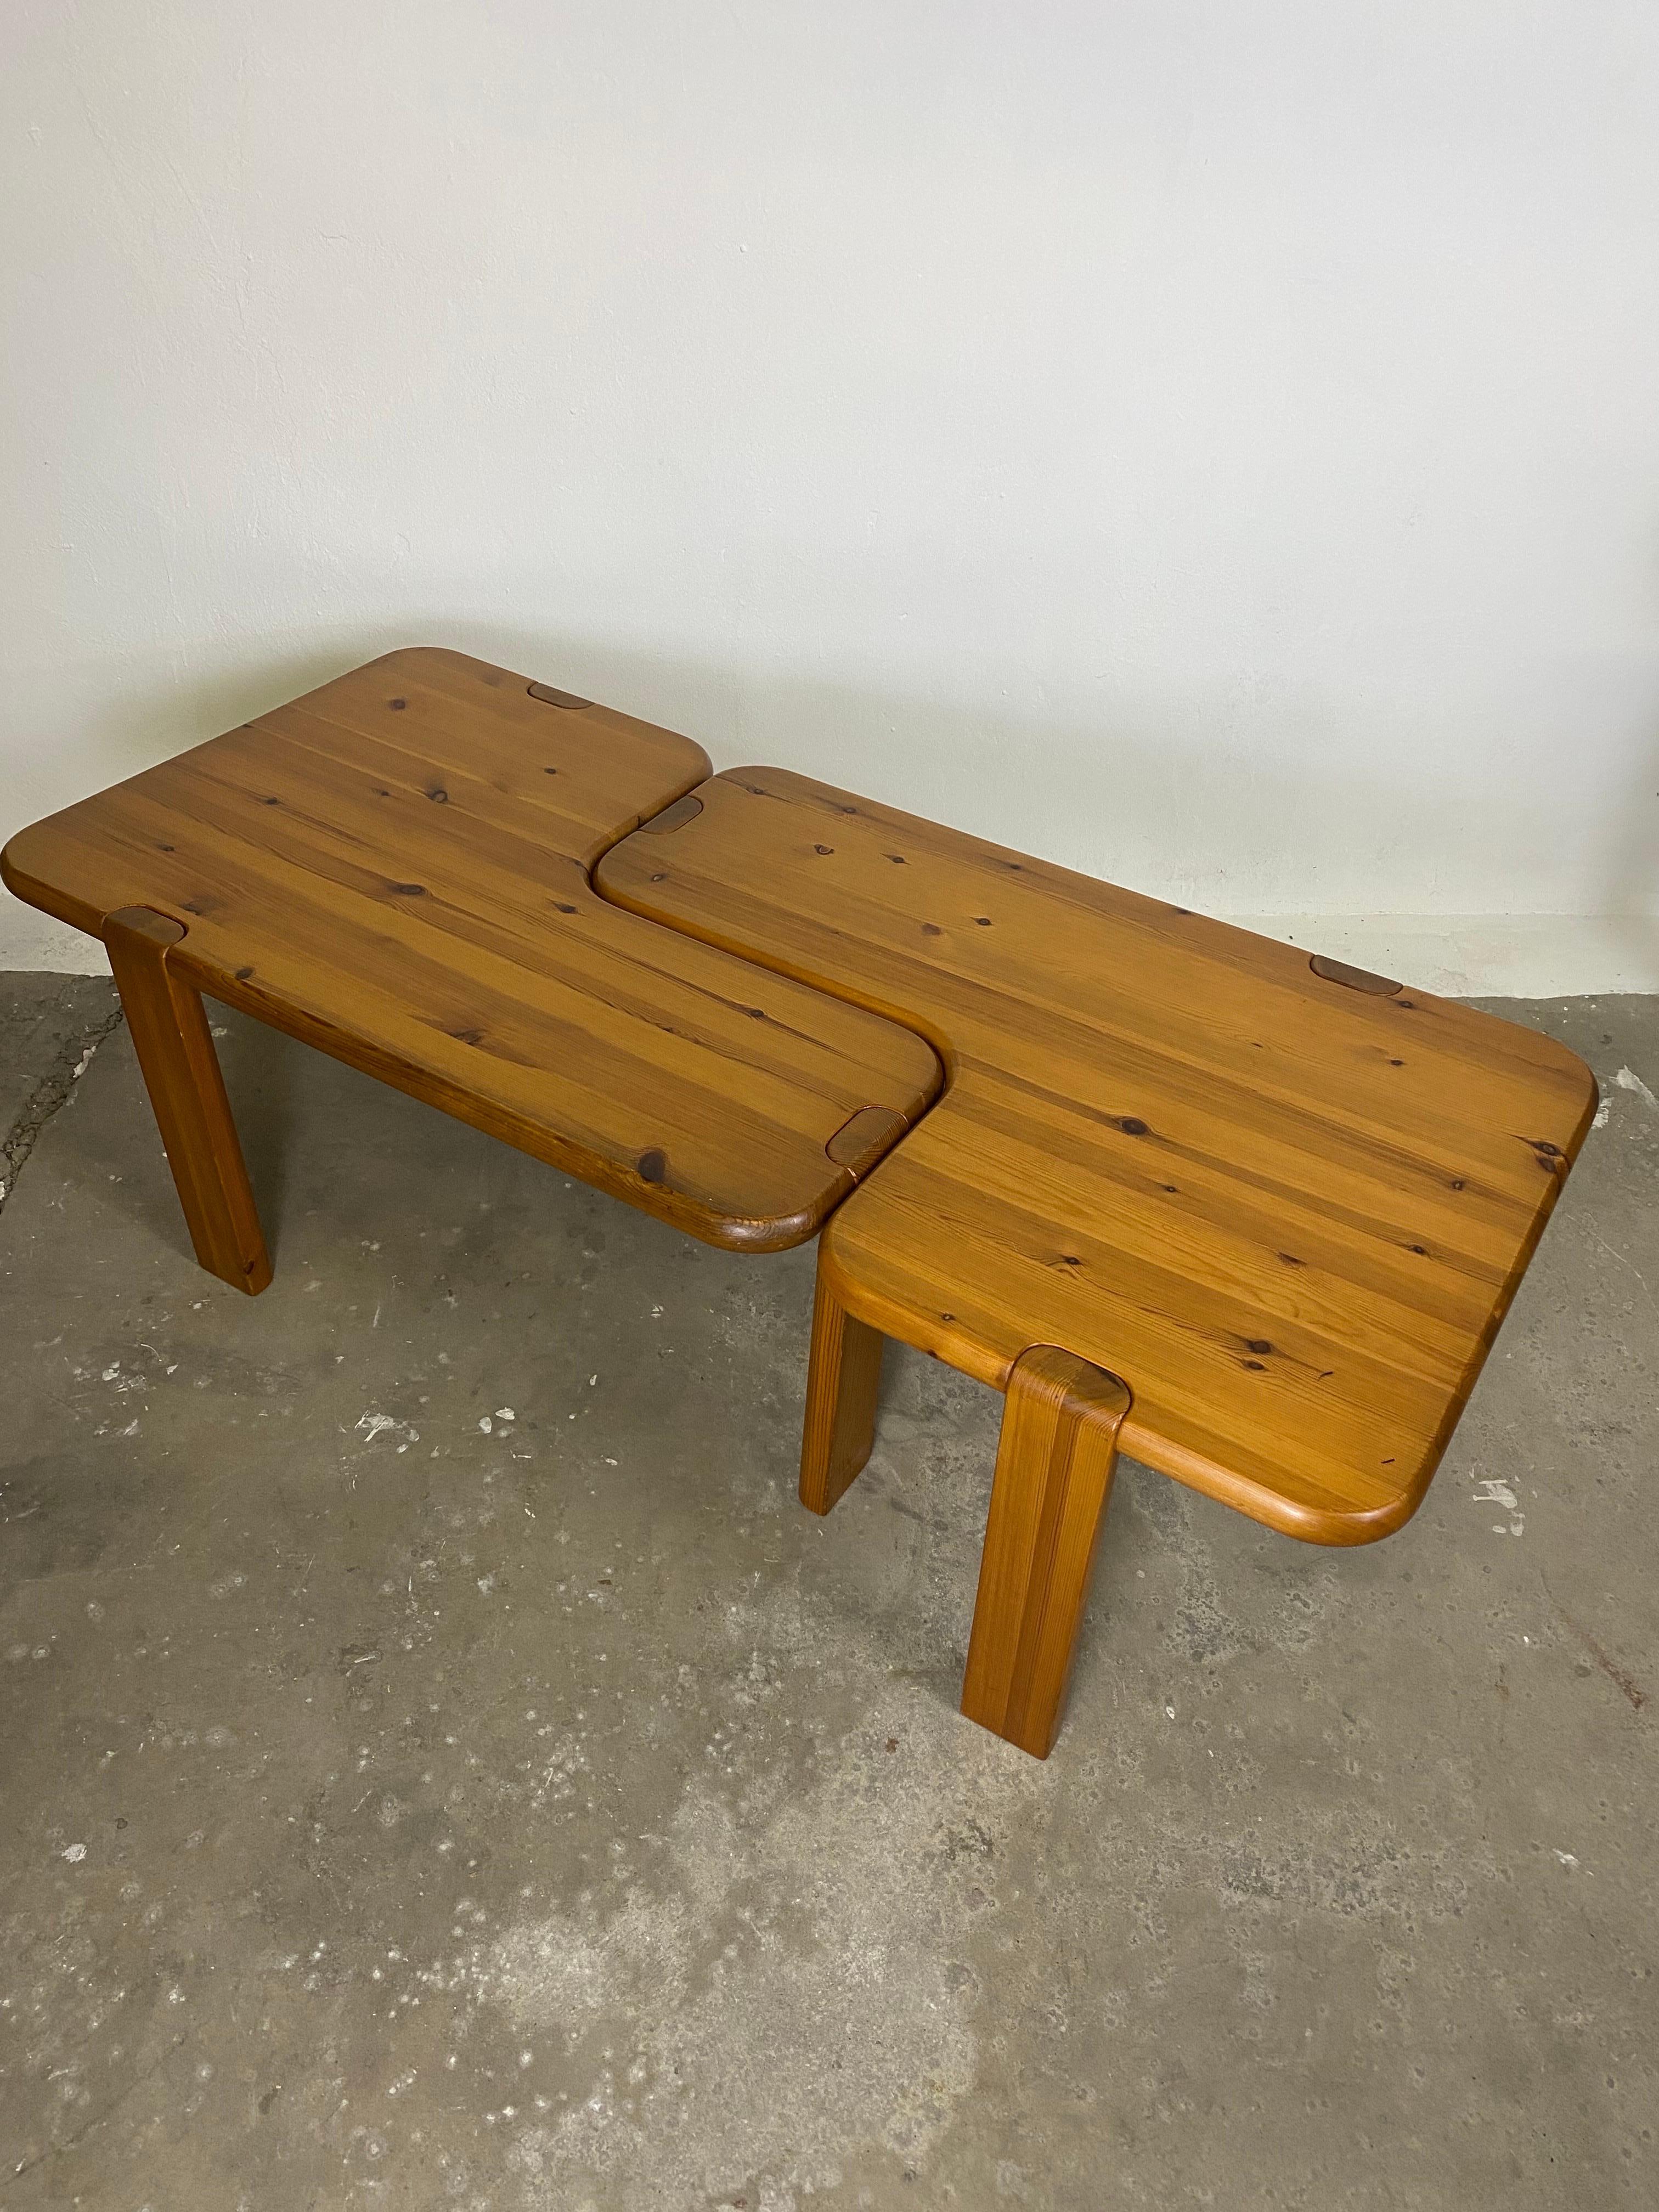 Un ensemble de 2  Table basse labellisée par Aksel Kjersgaard pour Odder Furniture au début des années 1970.
Les bords arrondis et la forme organique en L permettent de nombreuses combinaisons.
Fabriquées en bois de pin massif, ces tables offrent